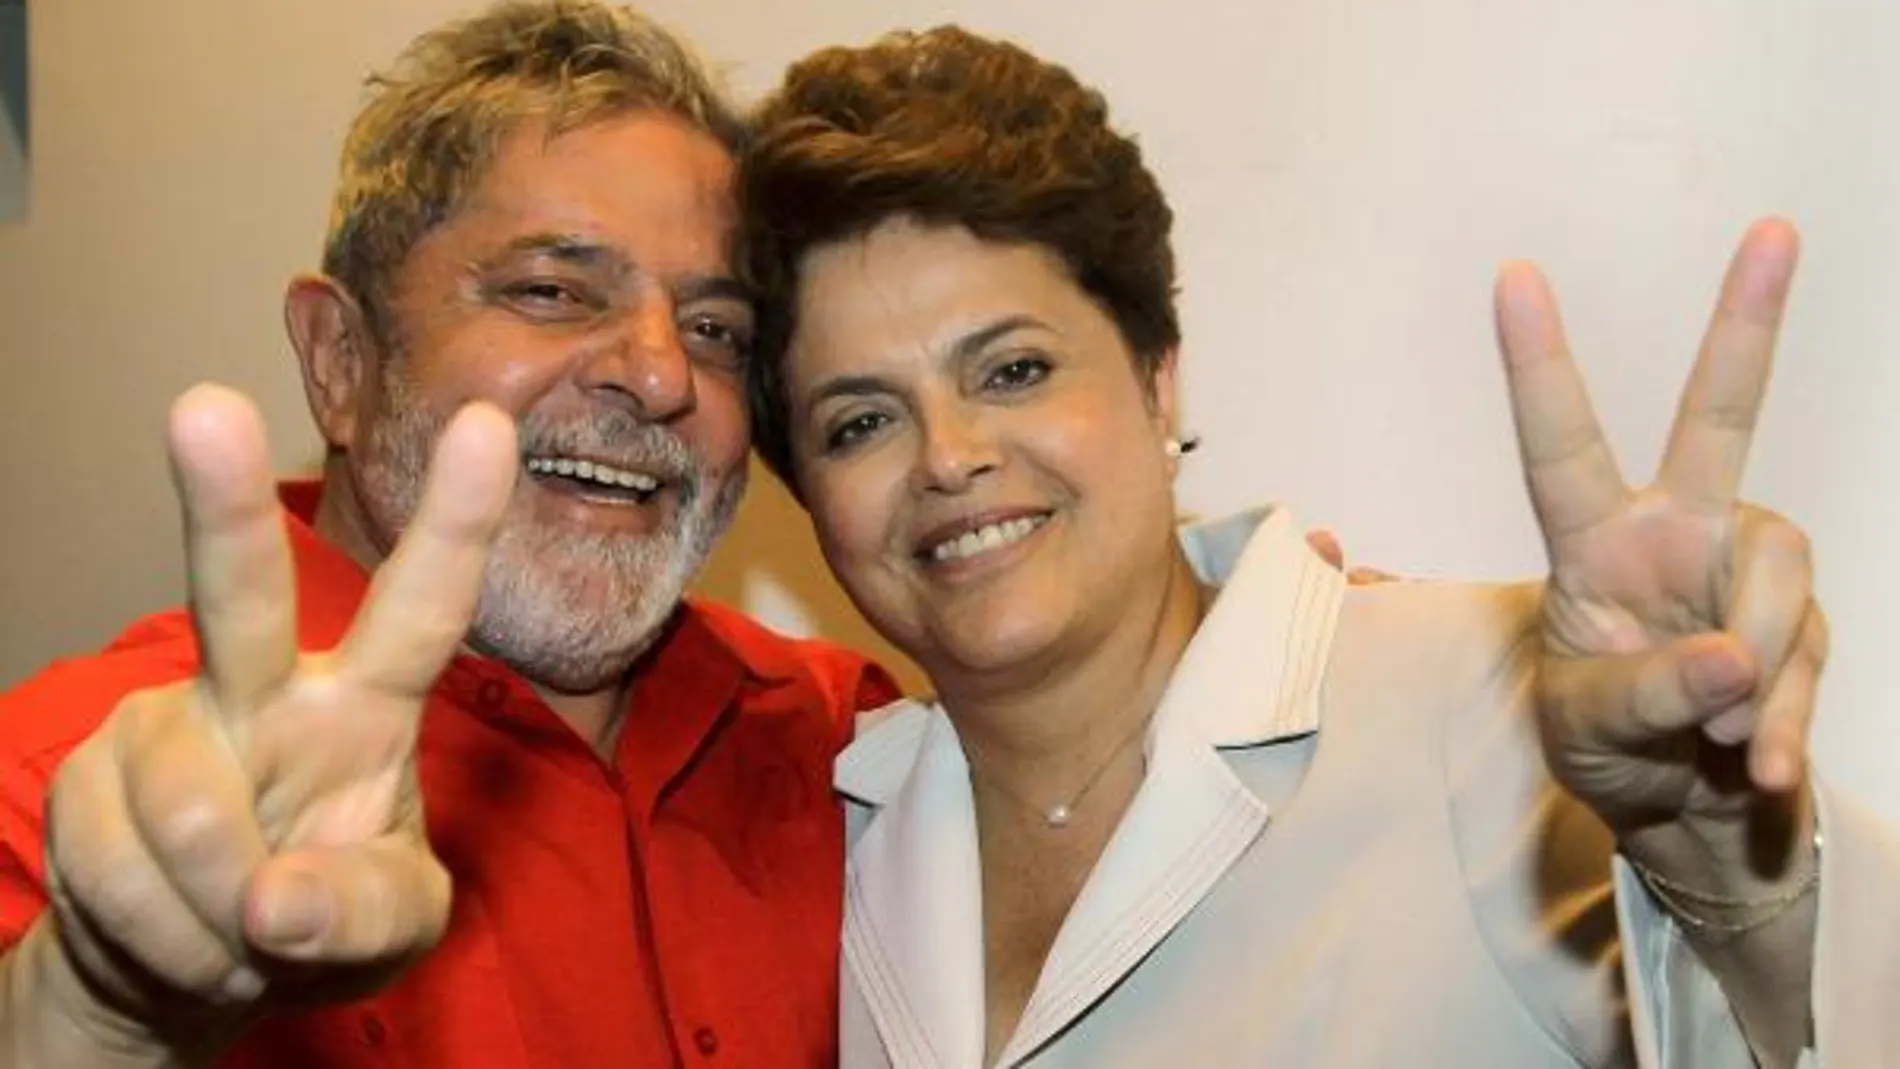 El presidente brasileño Luiz Lula da Silva, hace el signo de la victoria junto a Dilma Rousseff, presidenta del país